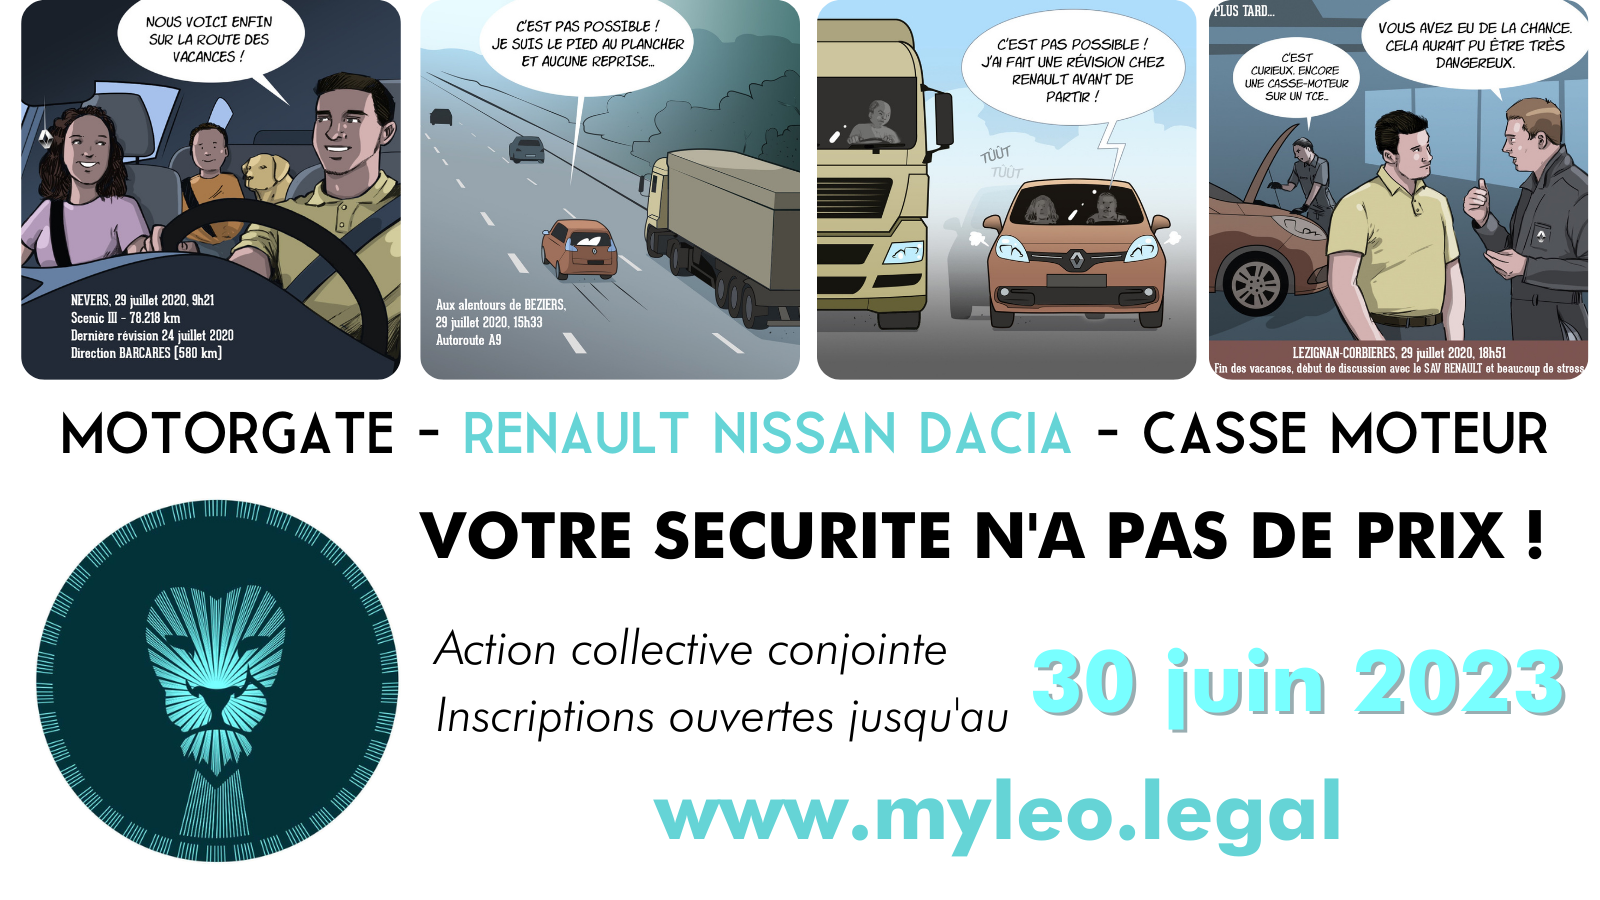 Principales questions / réponses sur le #Motorgate #Renault #Nissan #Dacia